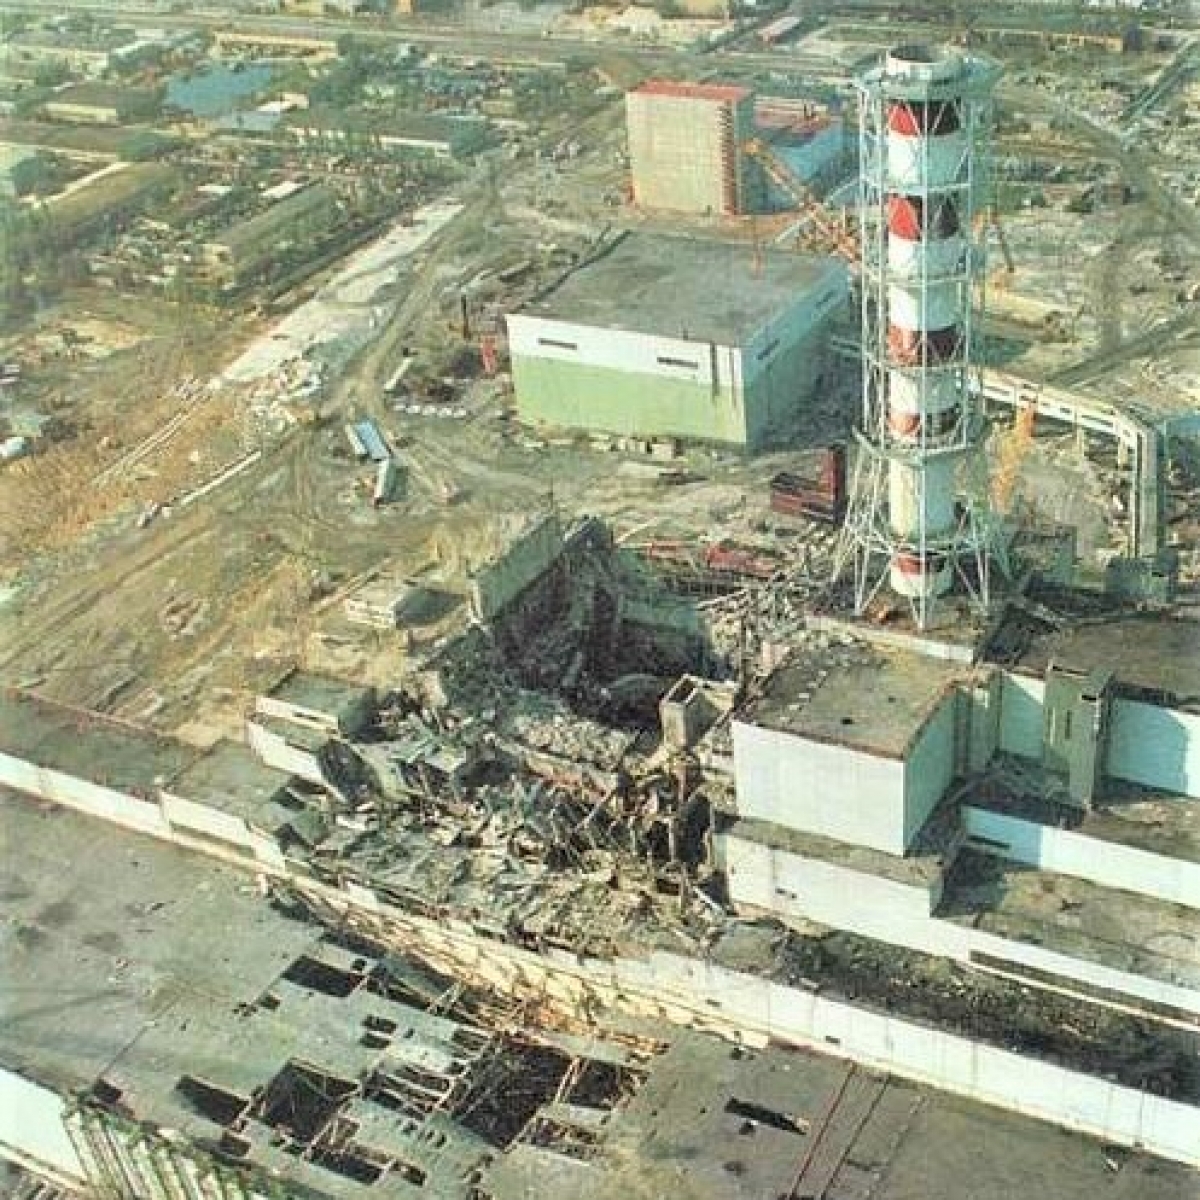 Liên Xô từng cố gắng che giấu quy mô của thảm họa Chernobyl như thế nào? - Ảnh 2.